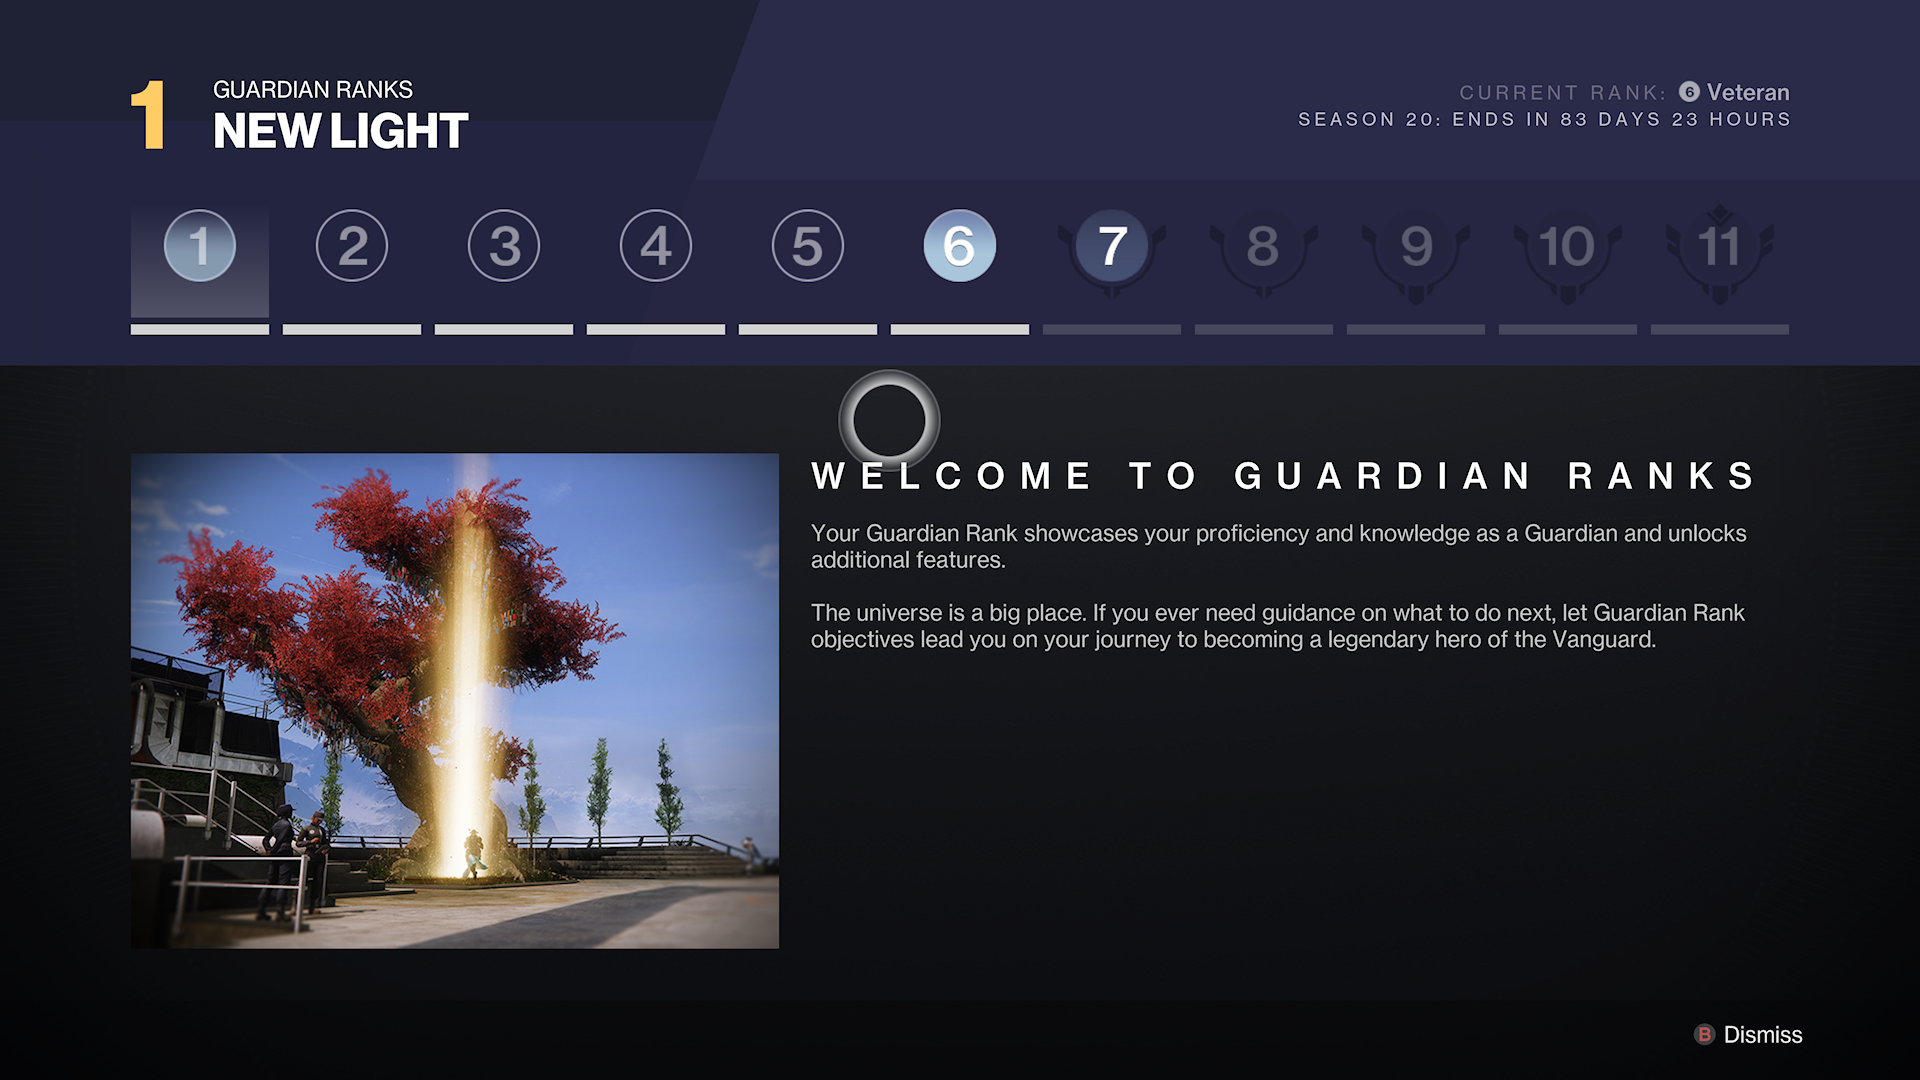 Destiny 2 Lightfall - l'écran d'accueil des rangs des gardiens montrant 11 niveaux